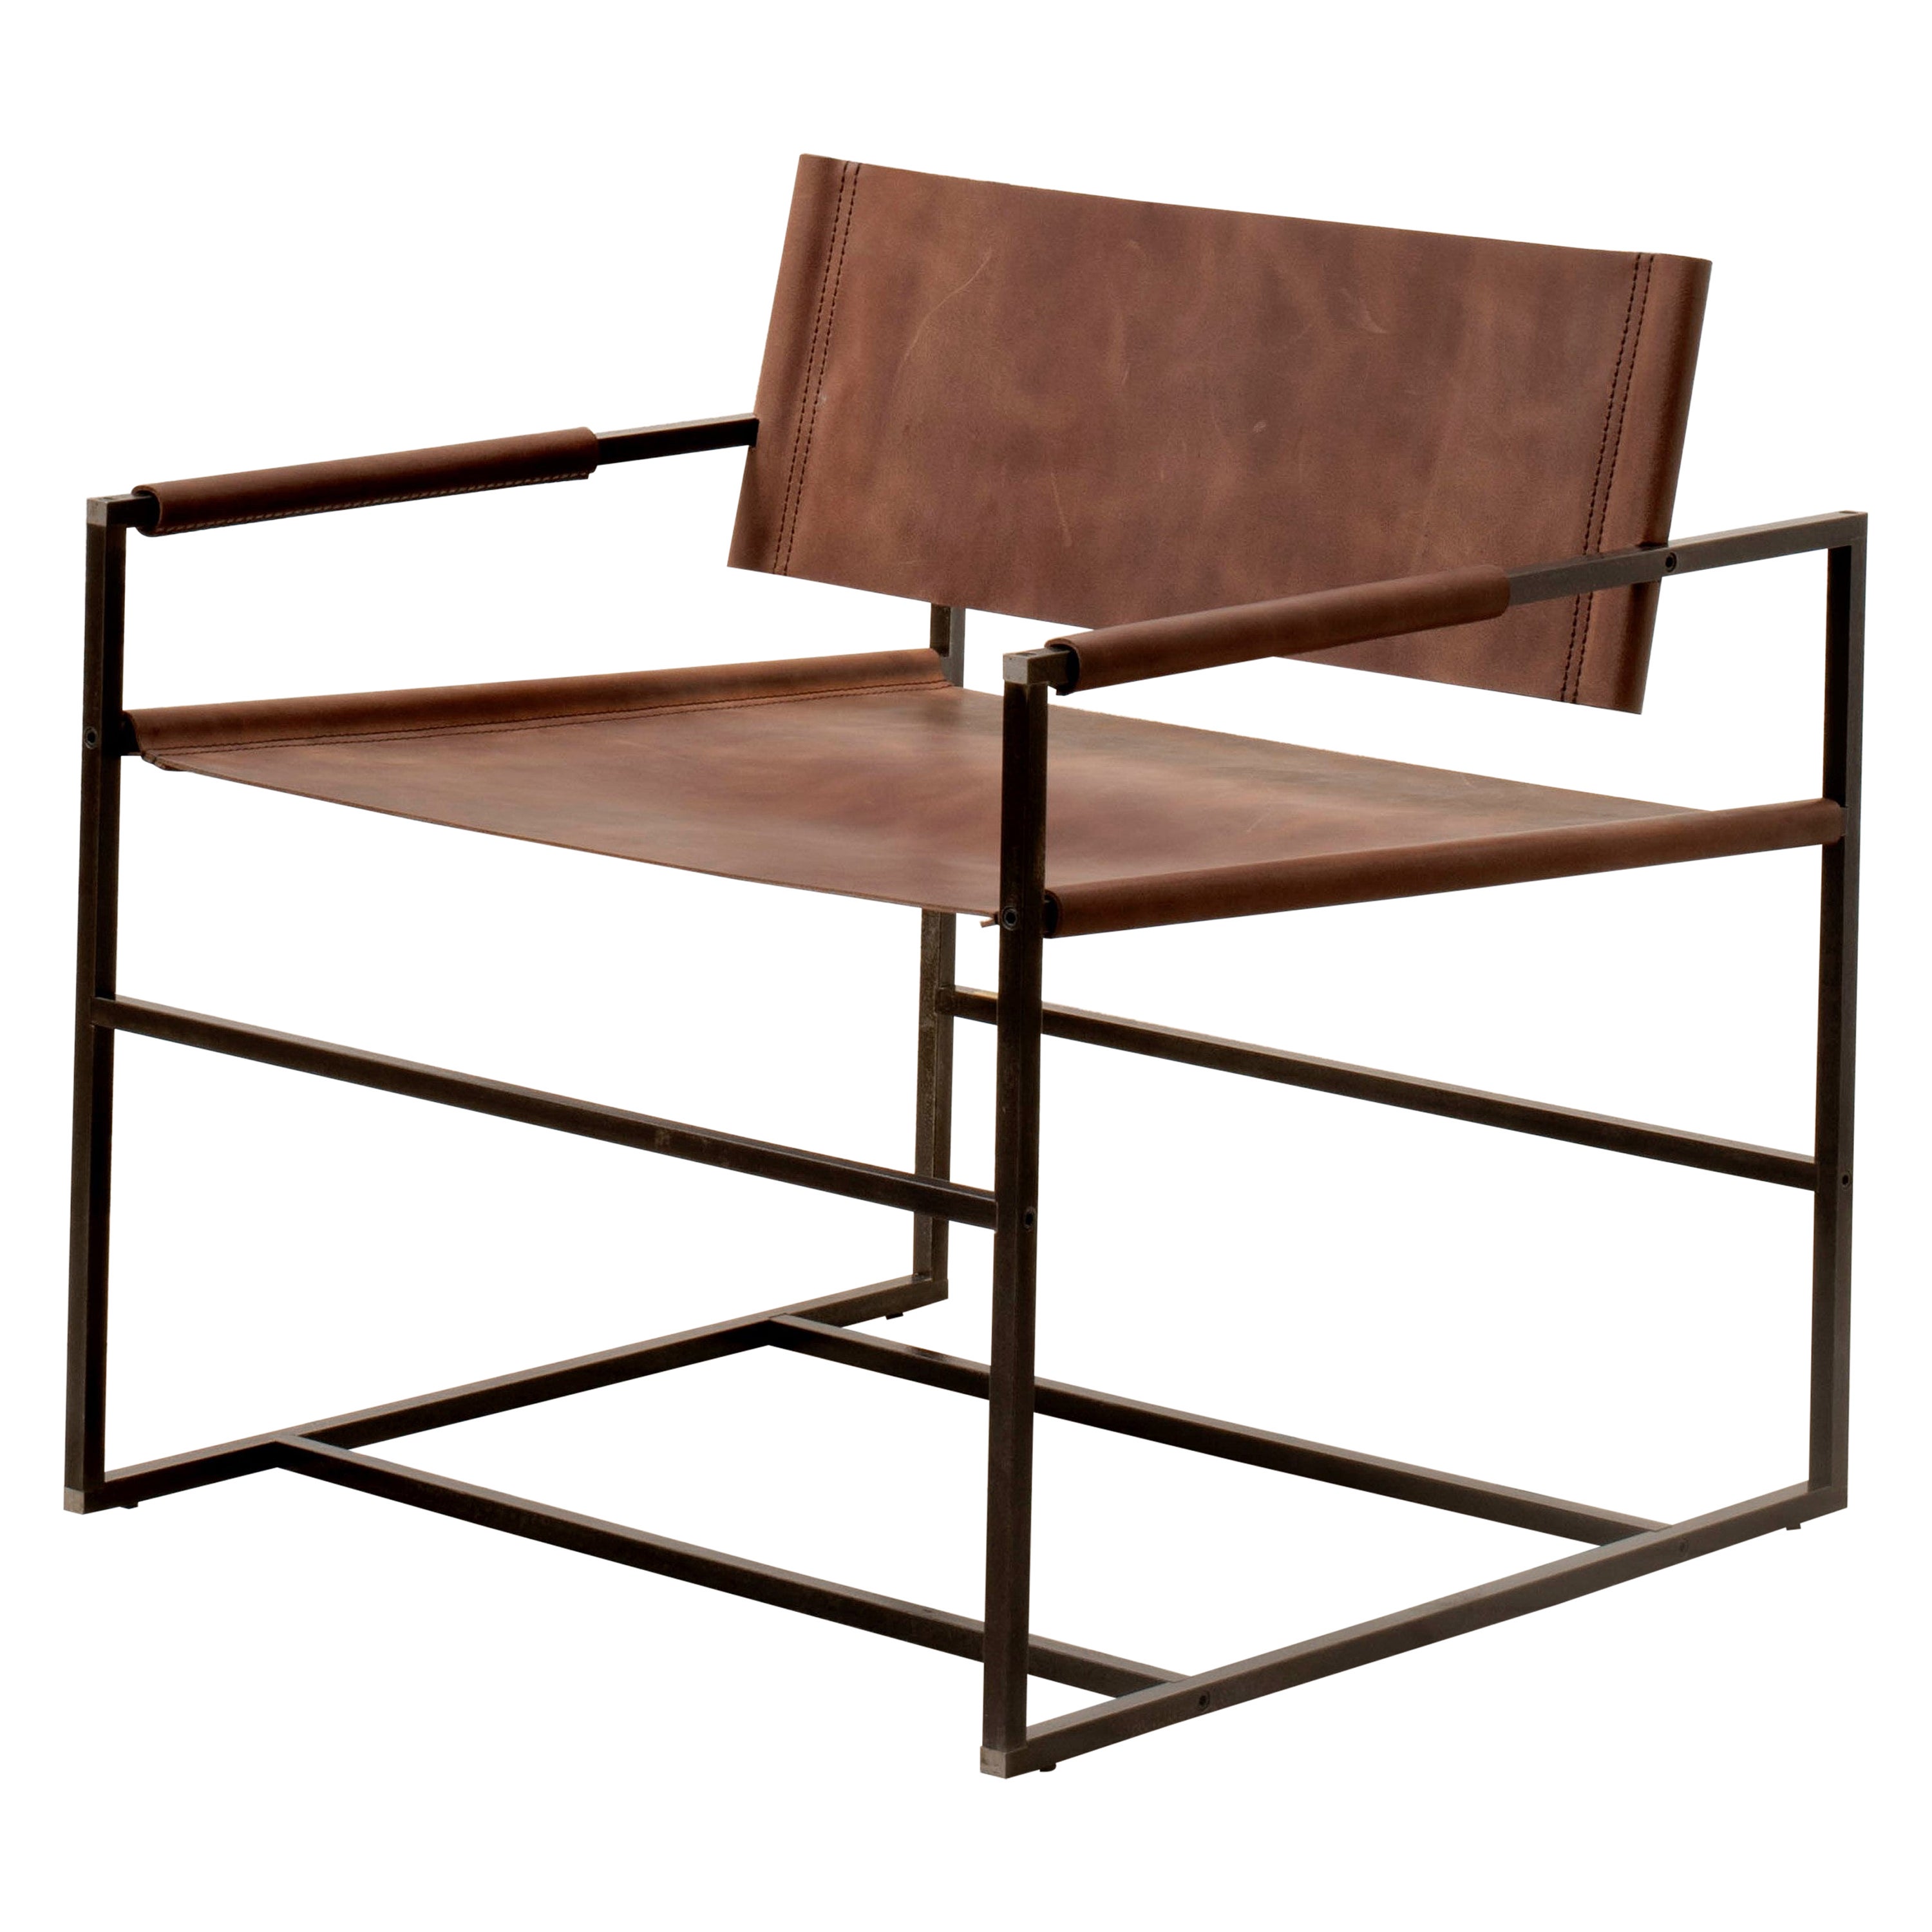  Fauteuil_01 ֻ fauteuil minimaliste, fabriqué à la main en cuir et en acier. 